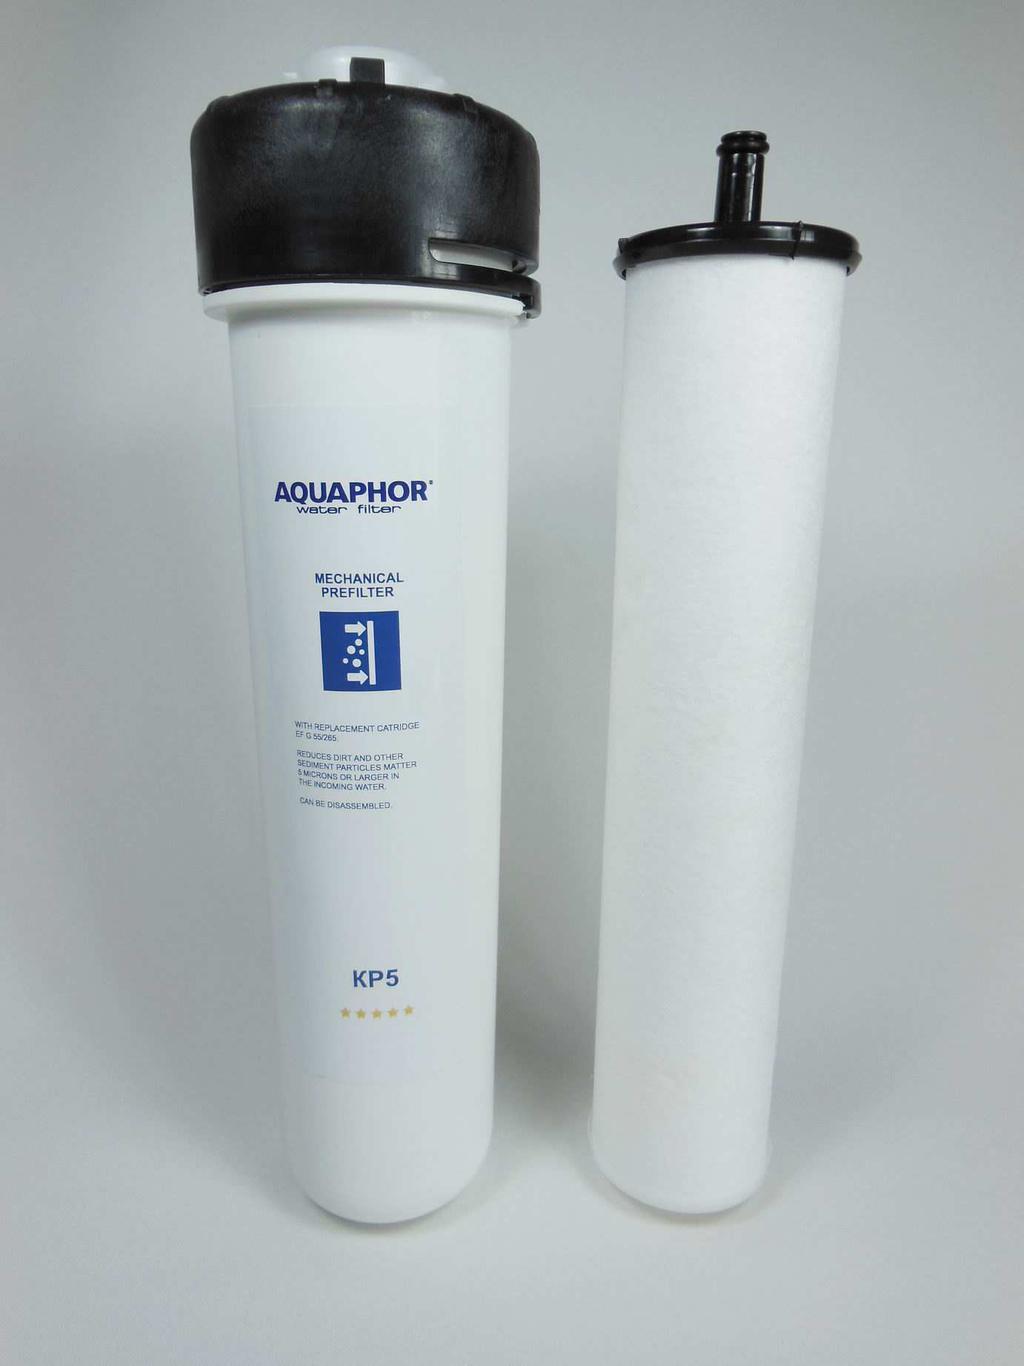 Filterfeinheit von 0.1 Mikrometer integriert. Die Membran entspricht den mikrobiologischen Ansprüchen gemäß EPA (Environmental Protection Agency).